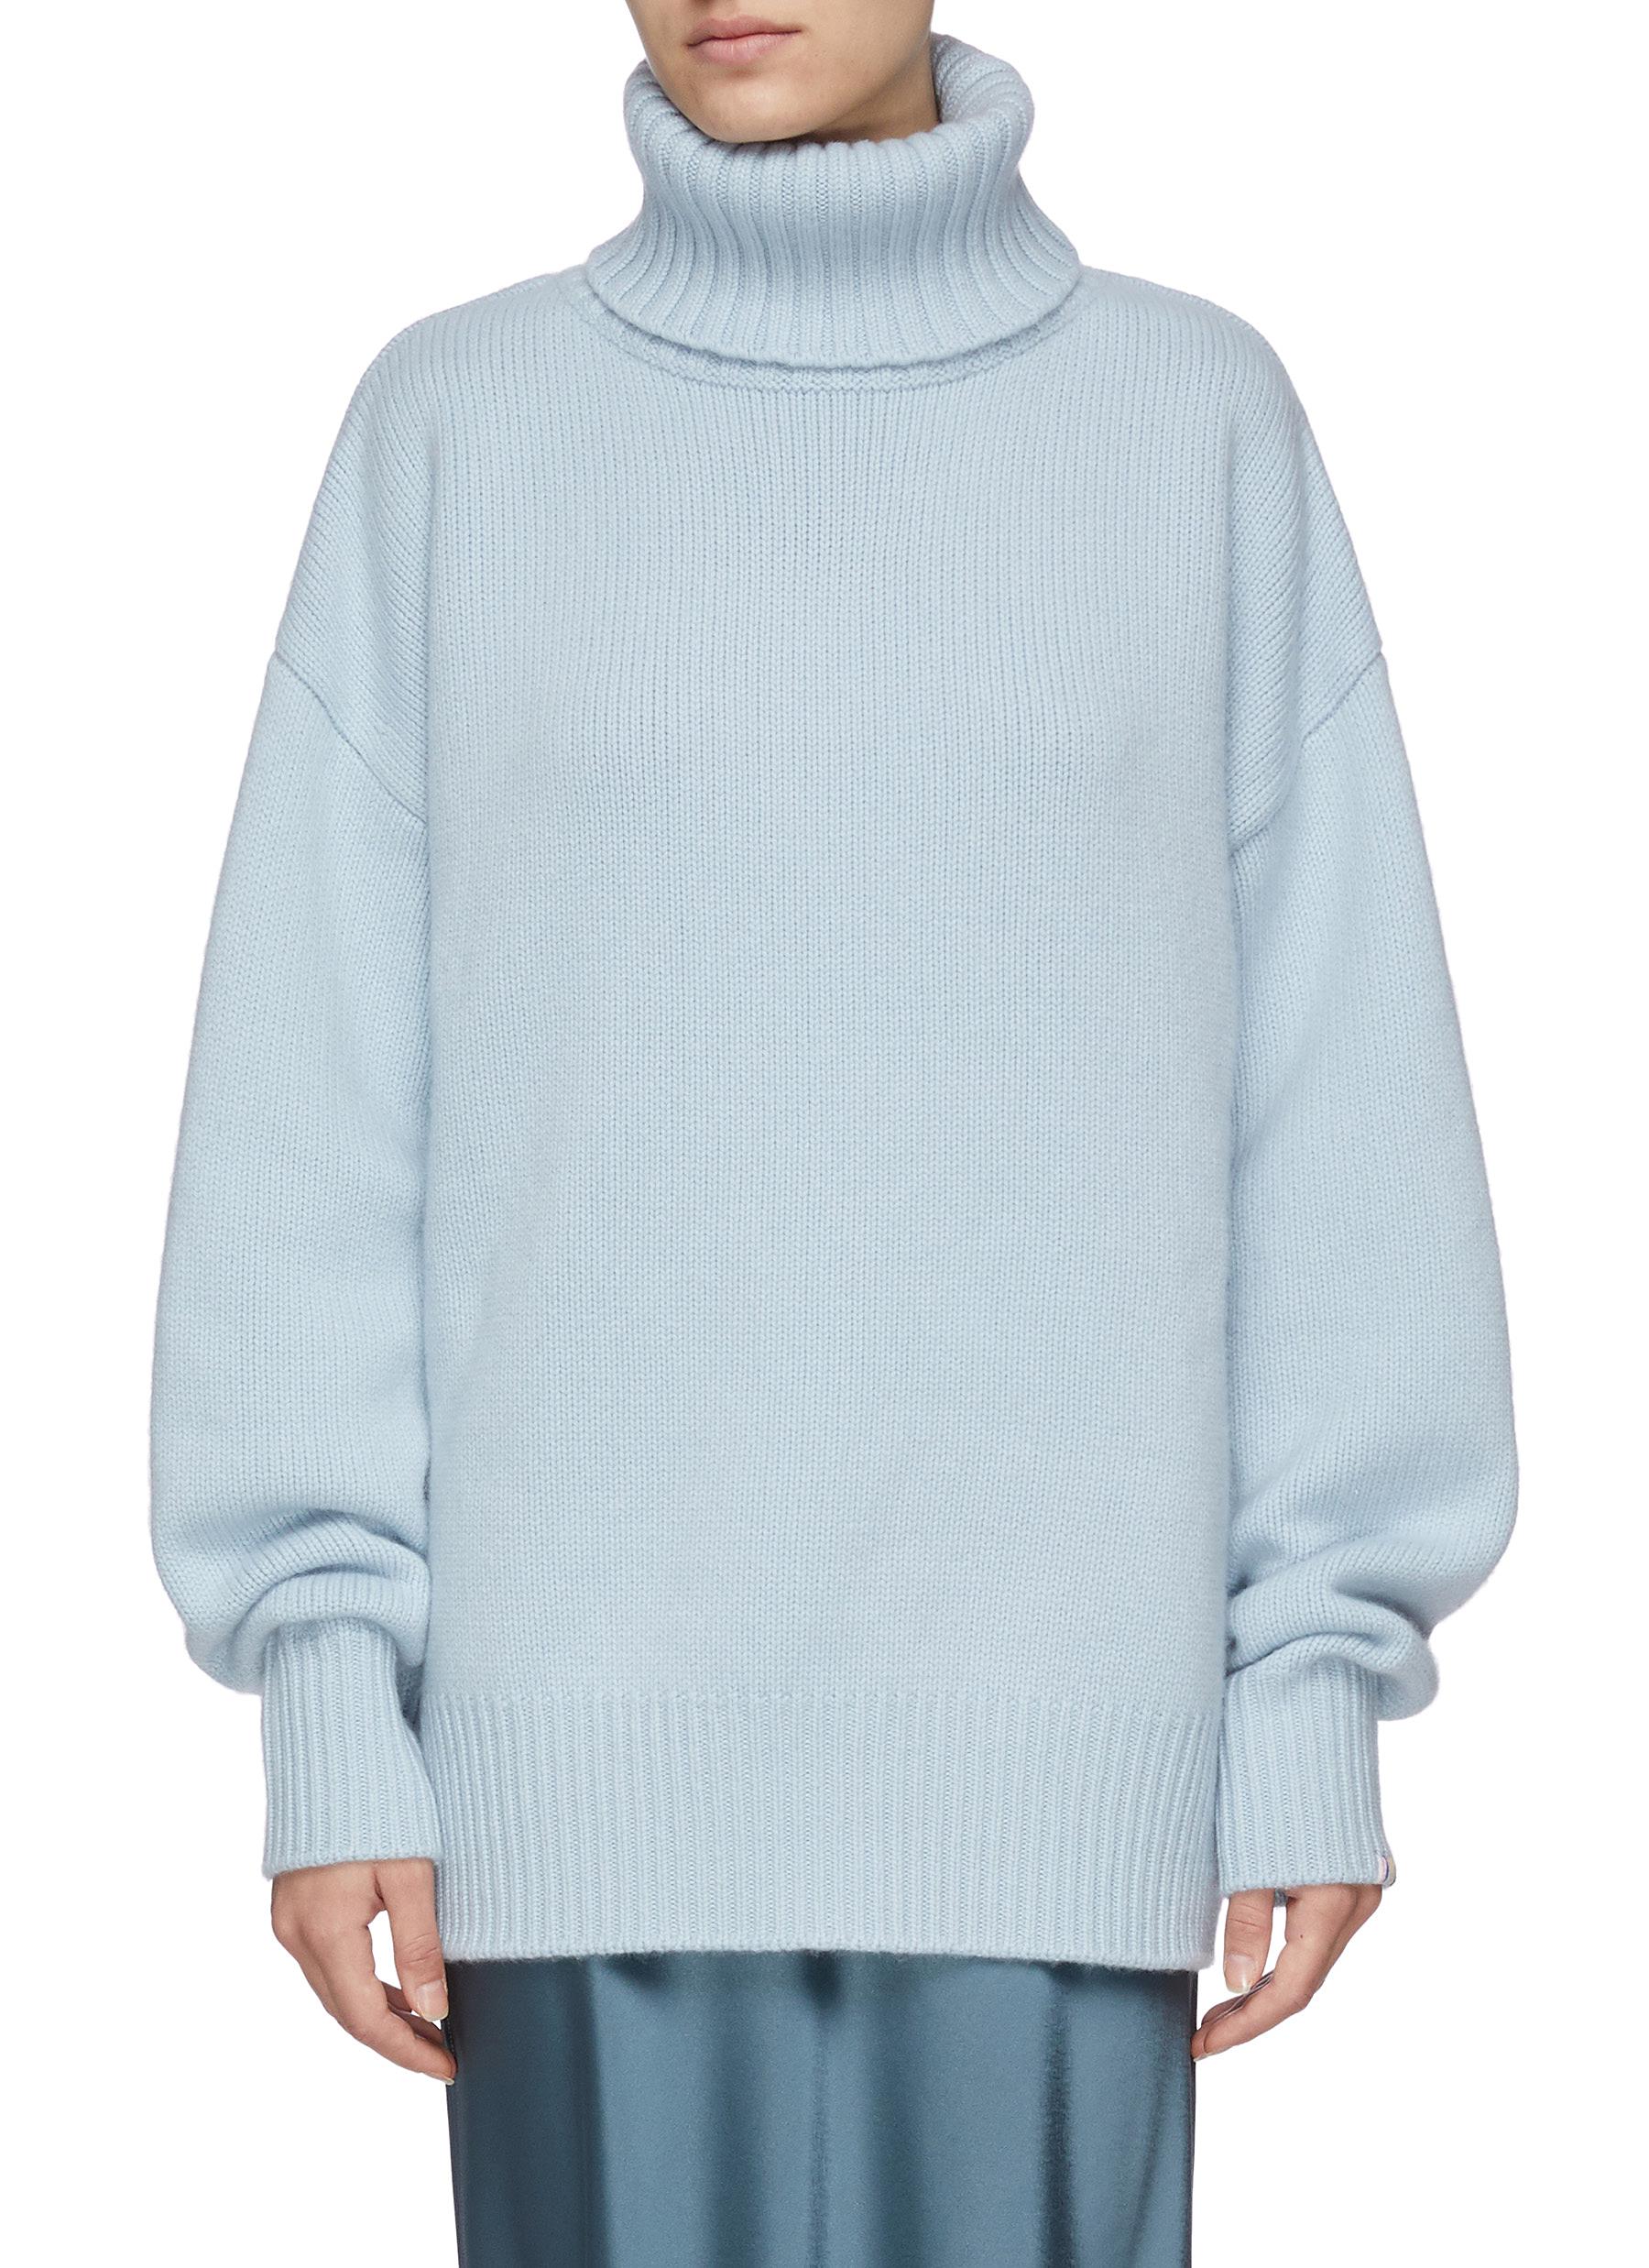 EXTREME CASHMERETurtleneck Oversize Cashmere Sweater | DailyMail